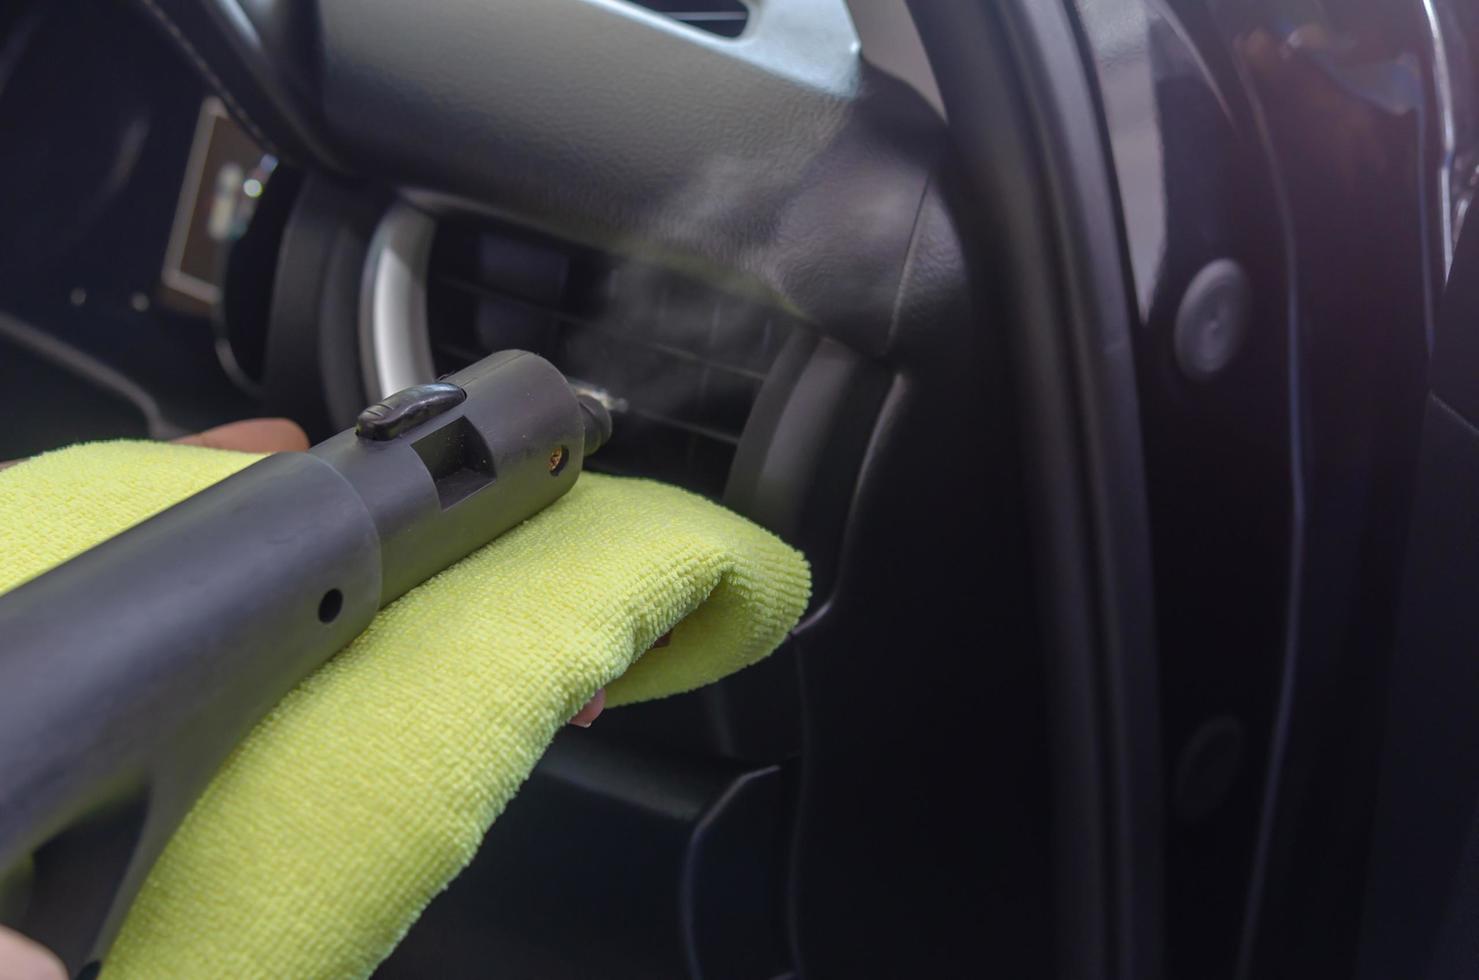 limpando o ar condicionado de um carro foto